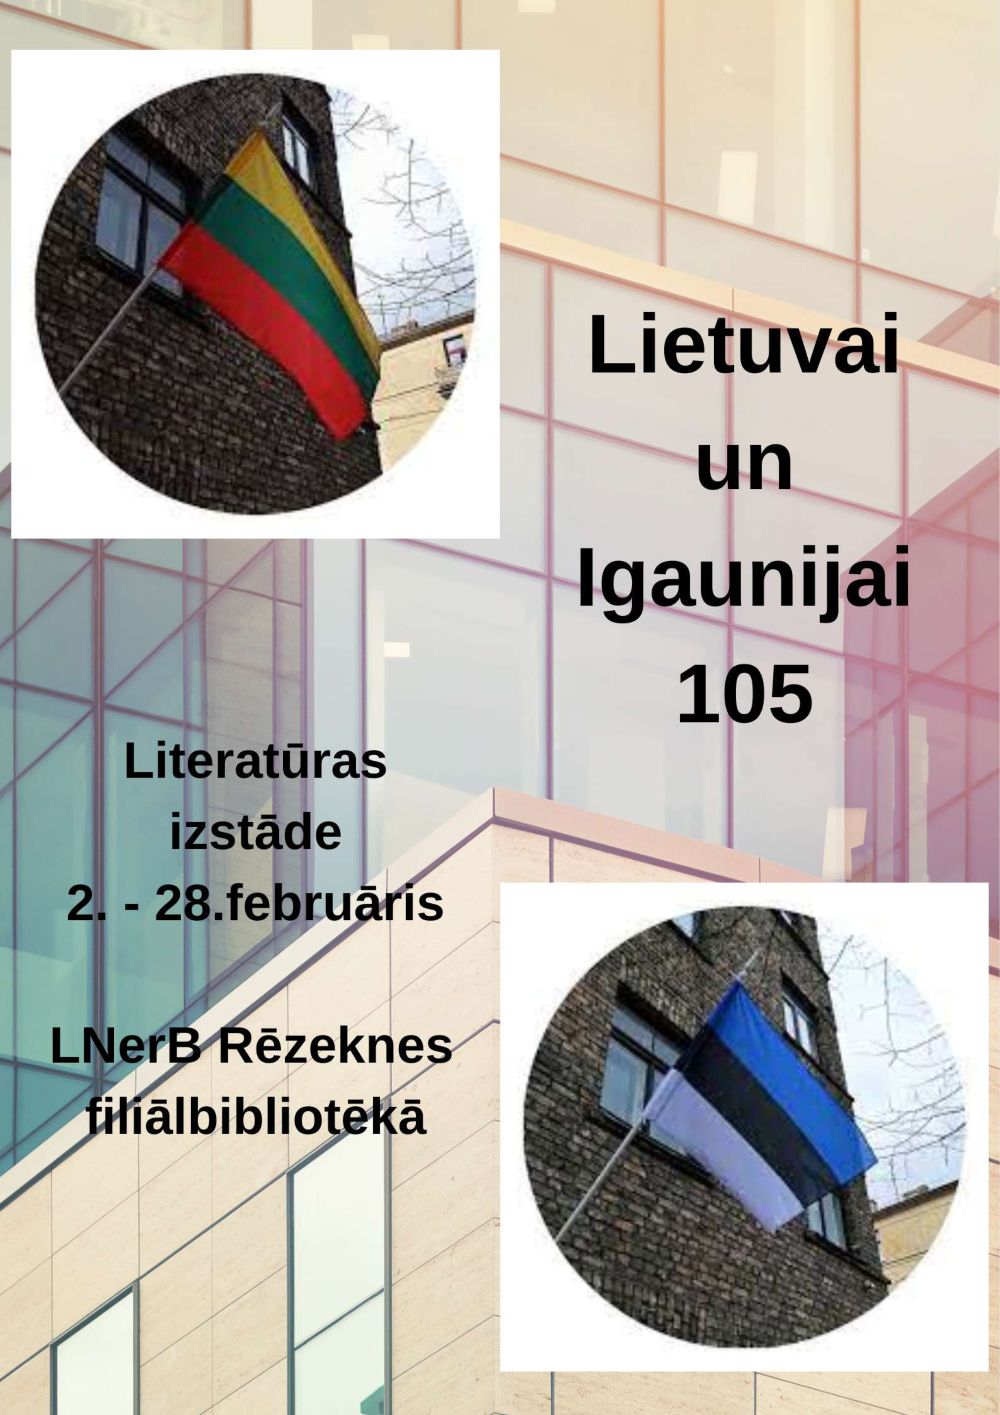 Plakāts izstādei "Lietuvai un Igaunijai - 105"